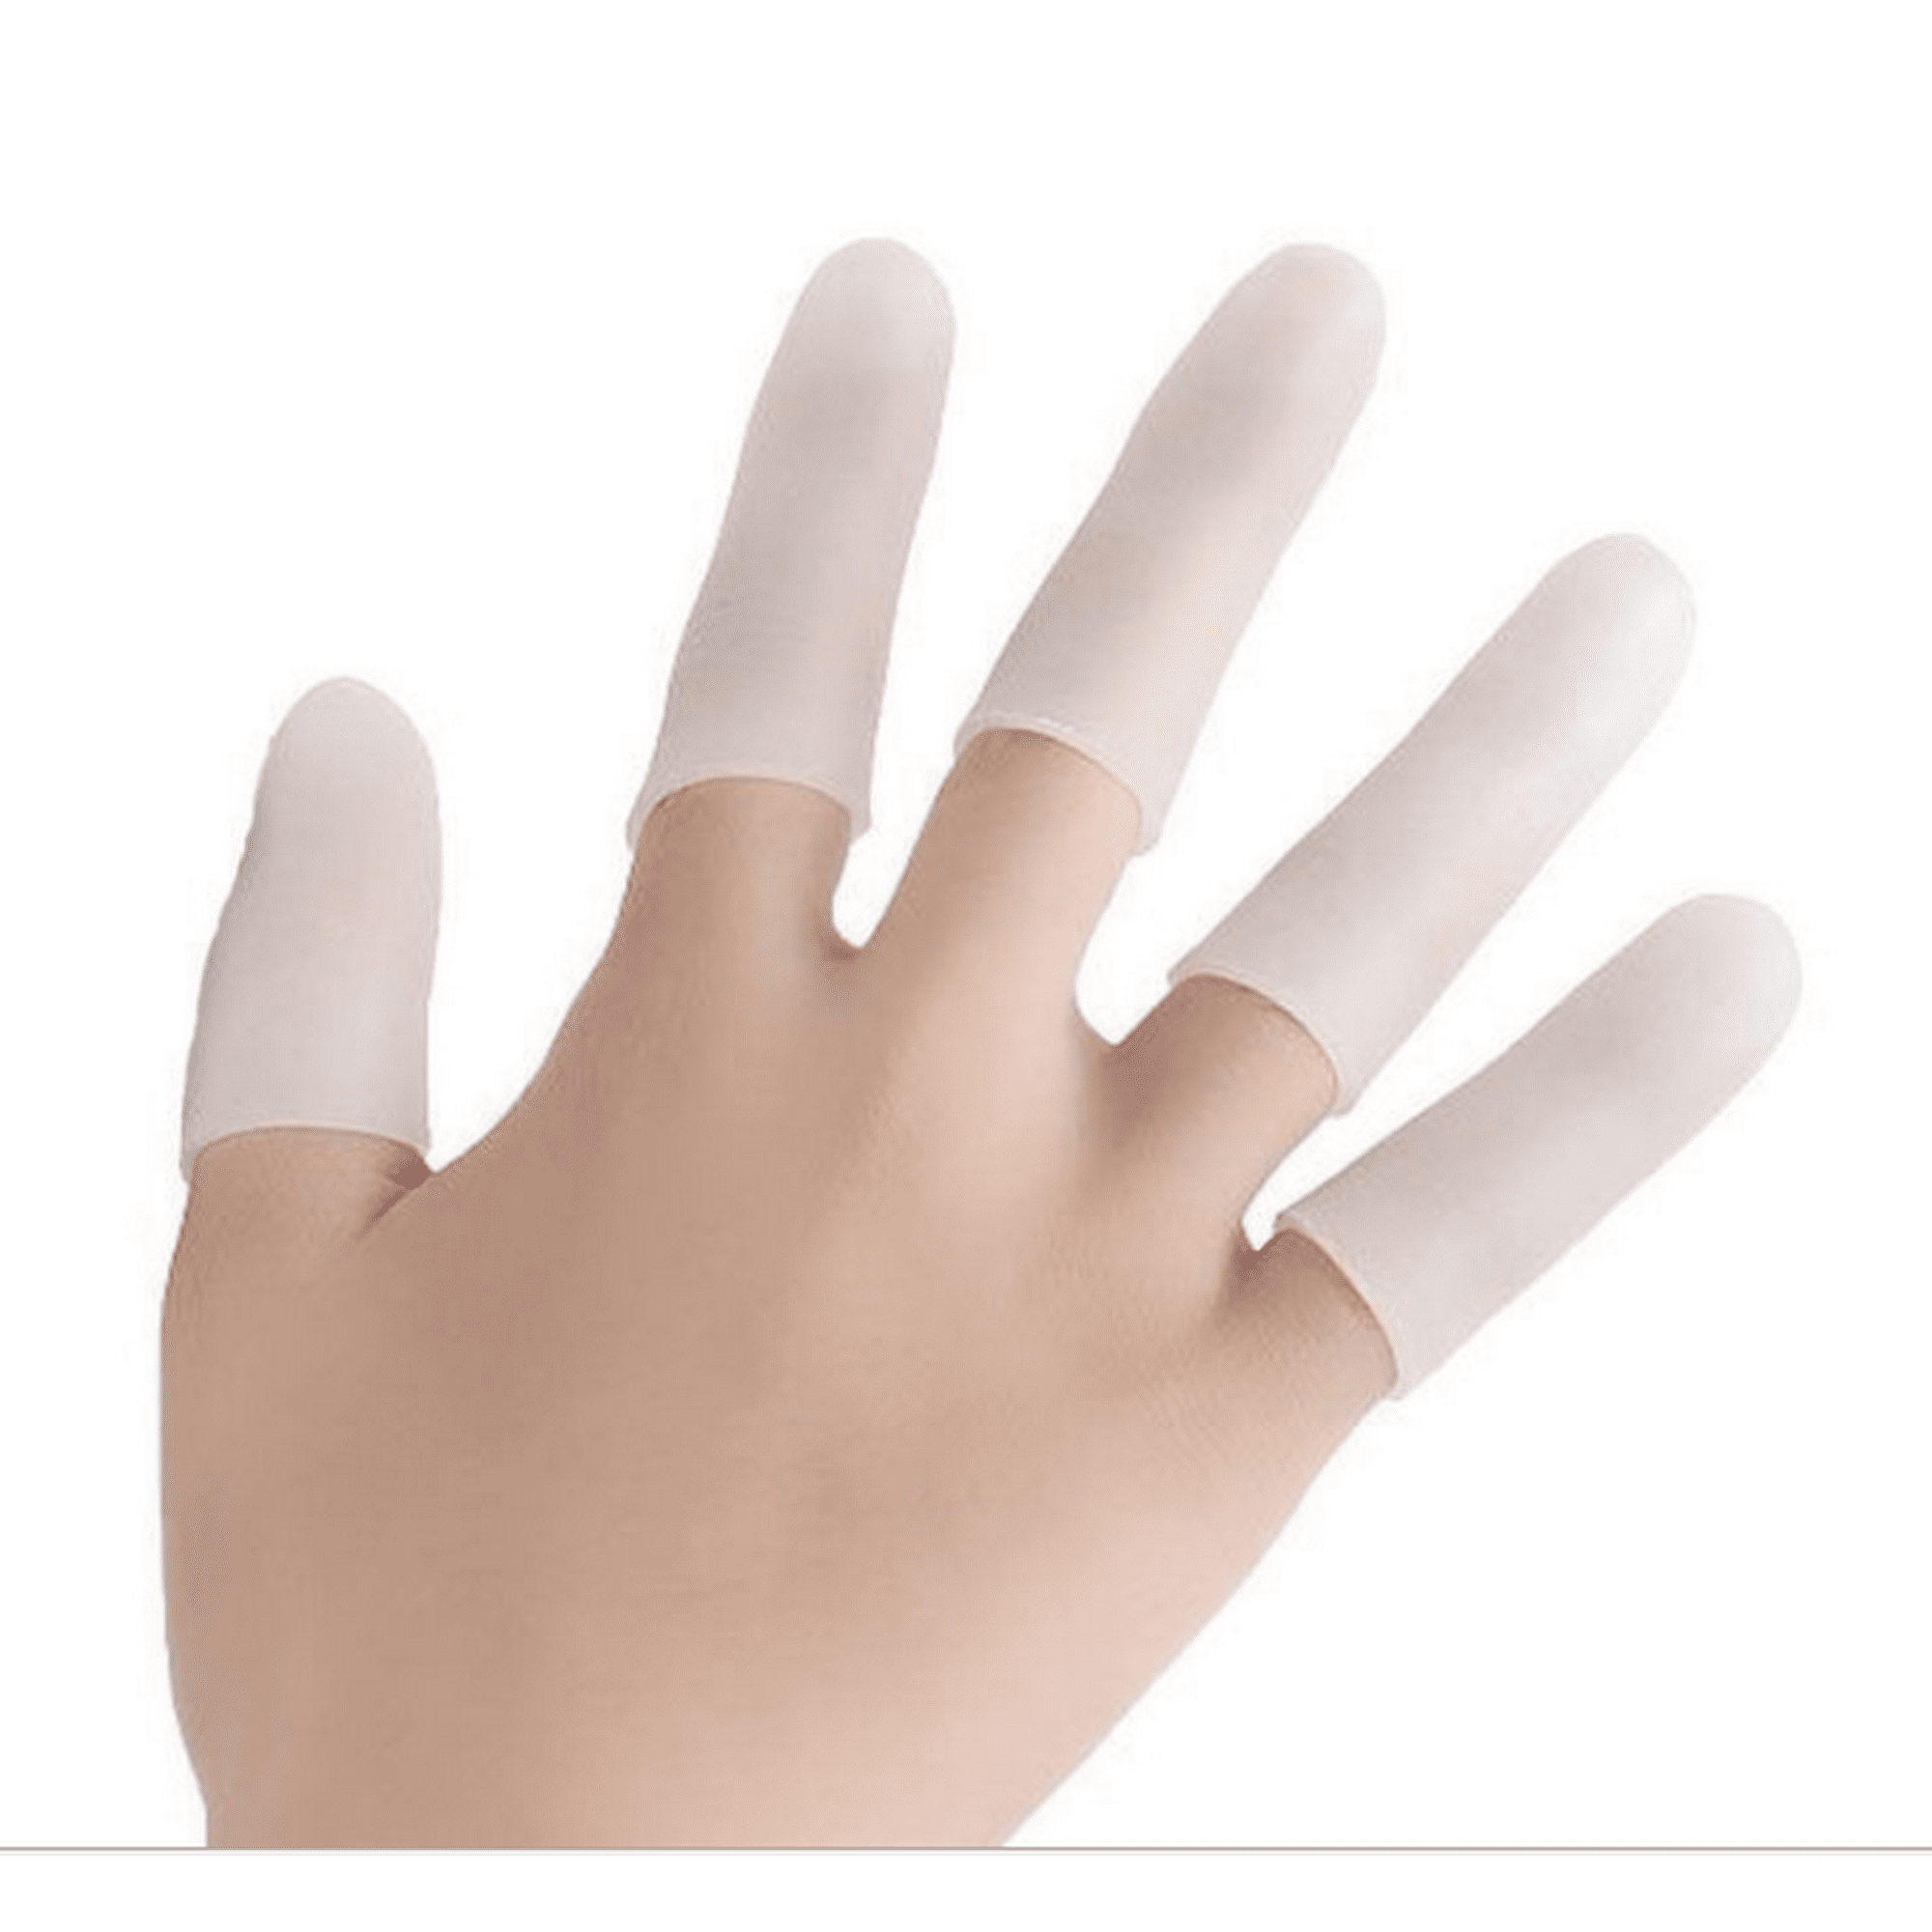 Cunas de gel para dedos, soporte protector de dedos (14 piezas) nuevo  material, fundas para dedos ideales para dedos gatillo, eccema de manos,  grietas